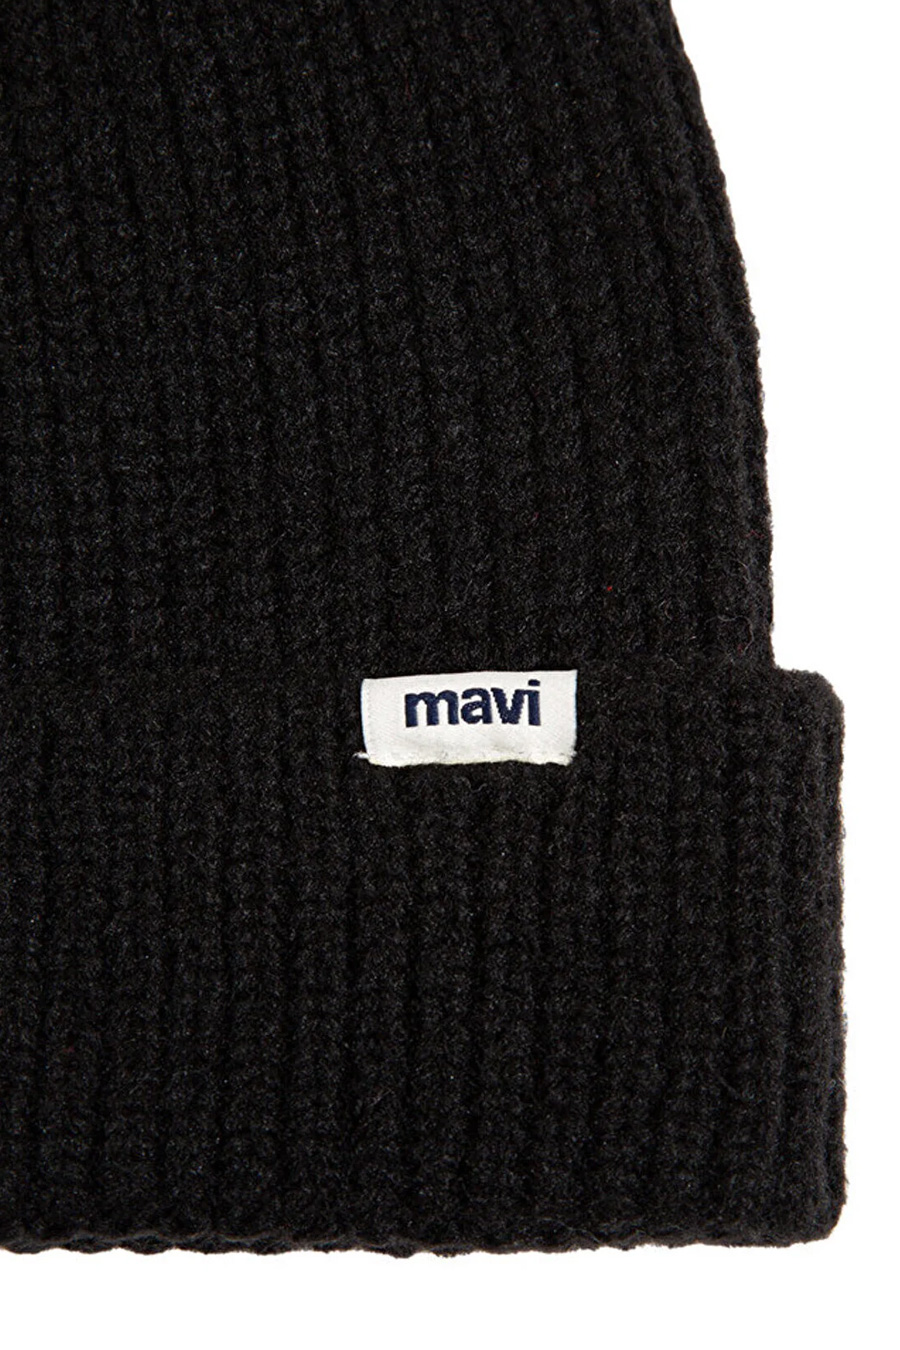 Ziemas cepure MAVI 1910719-900